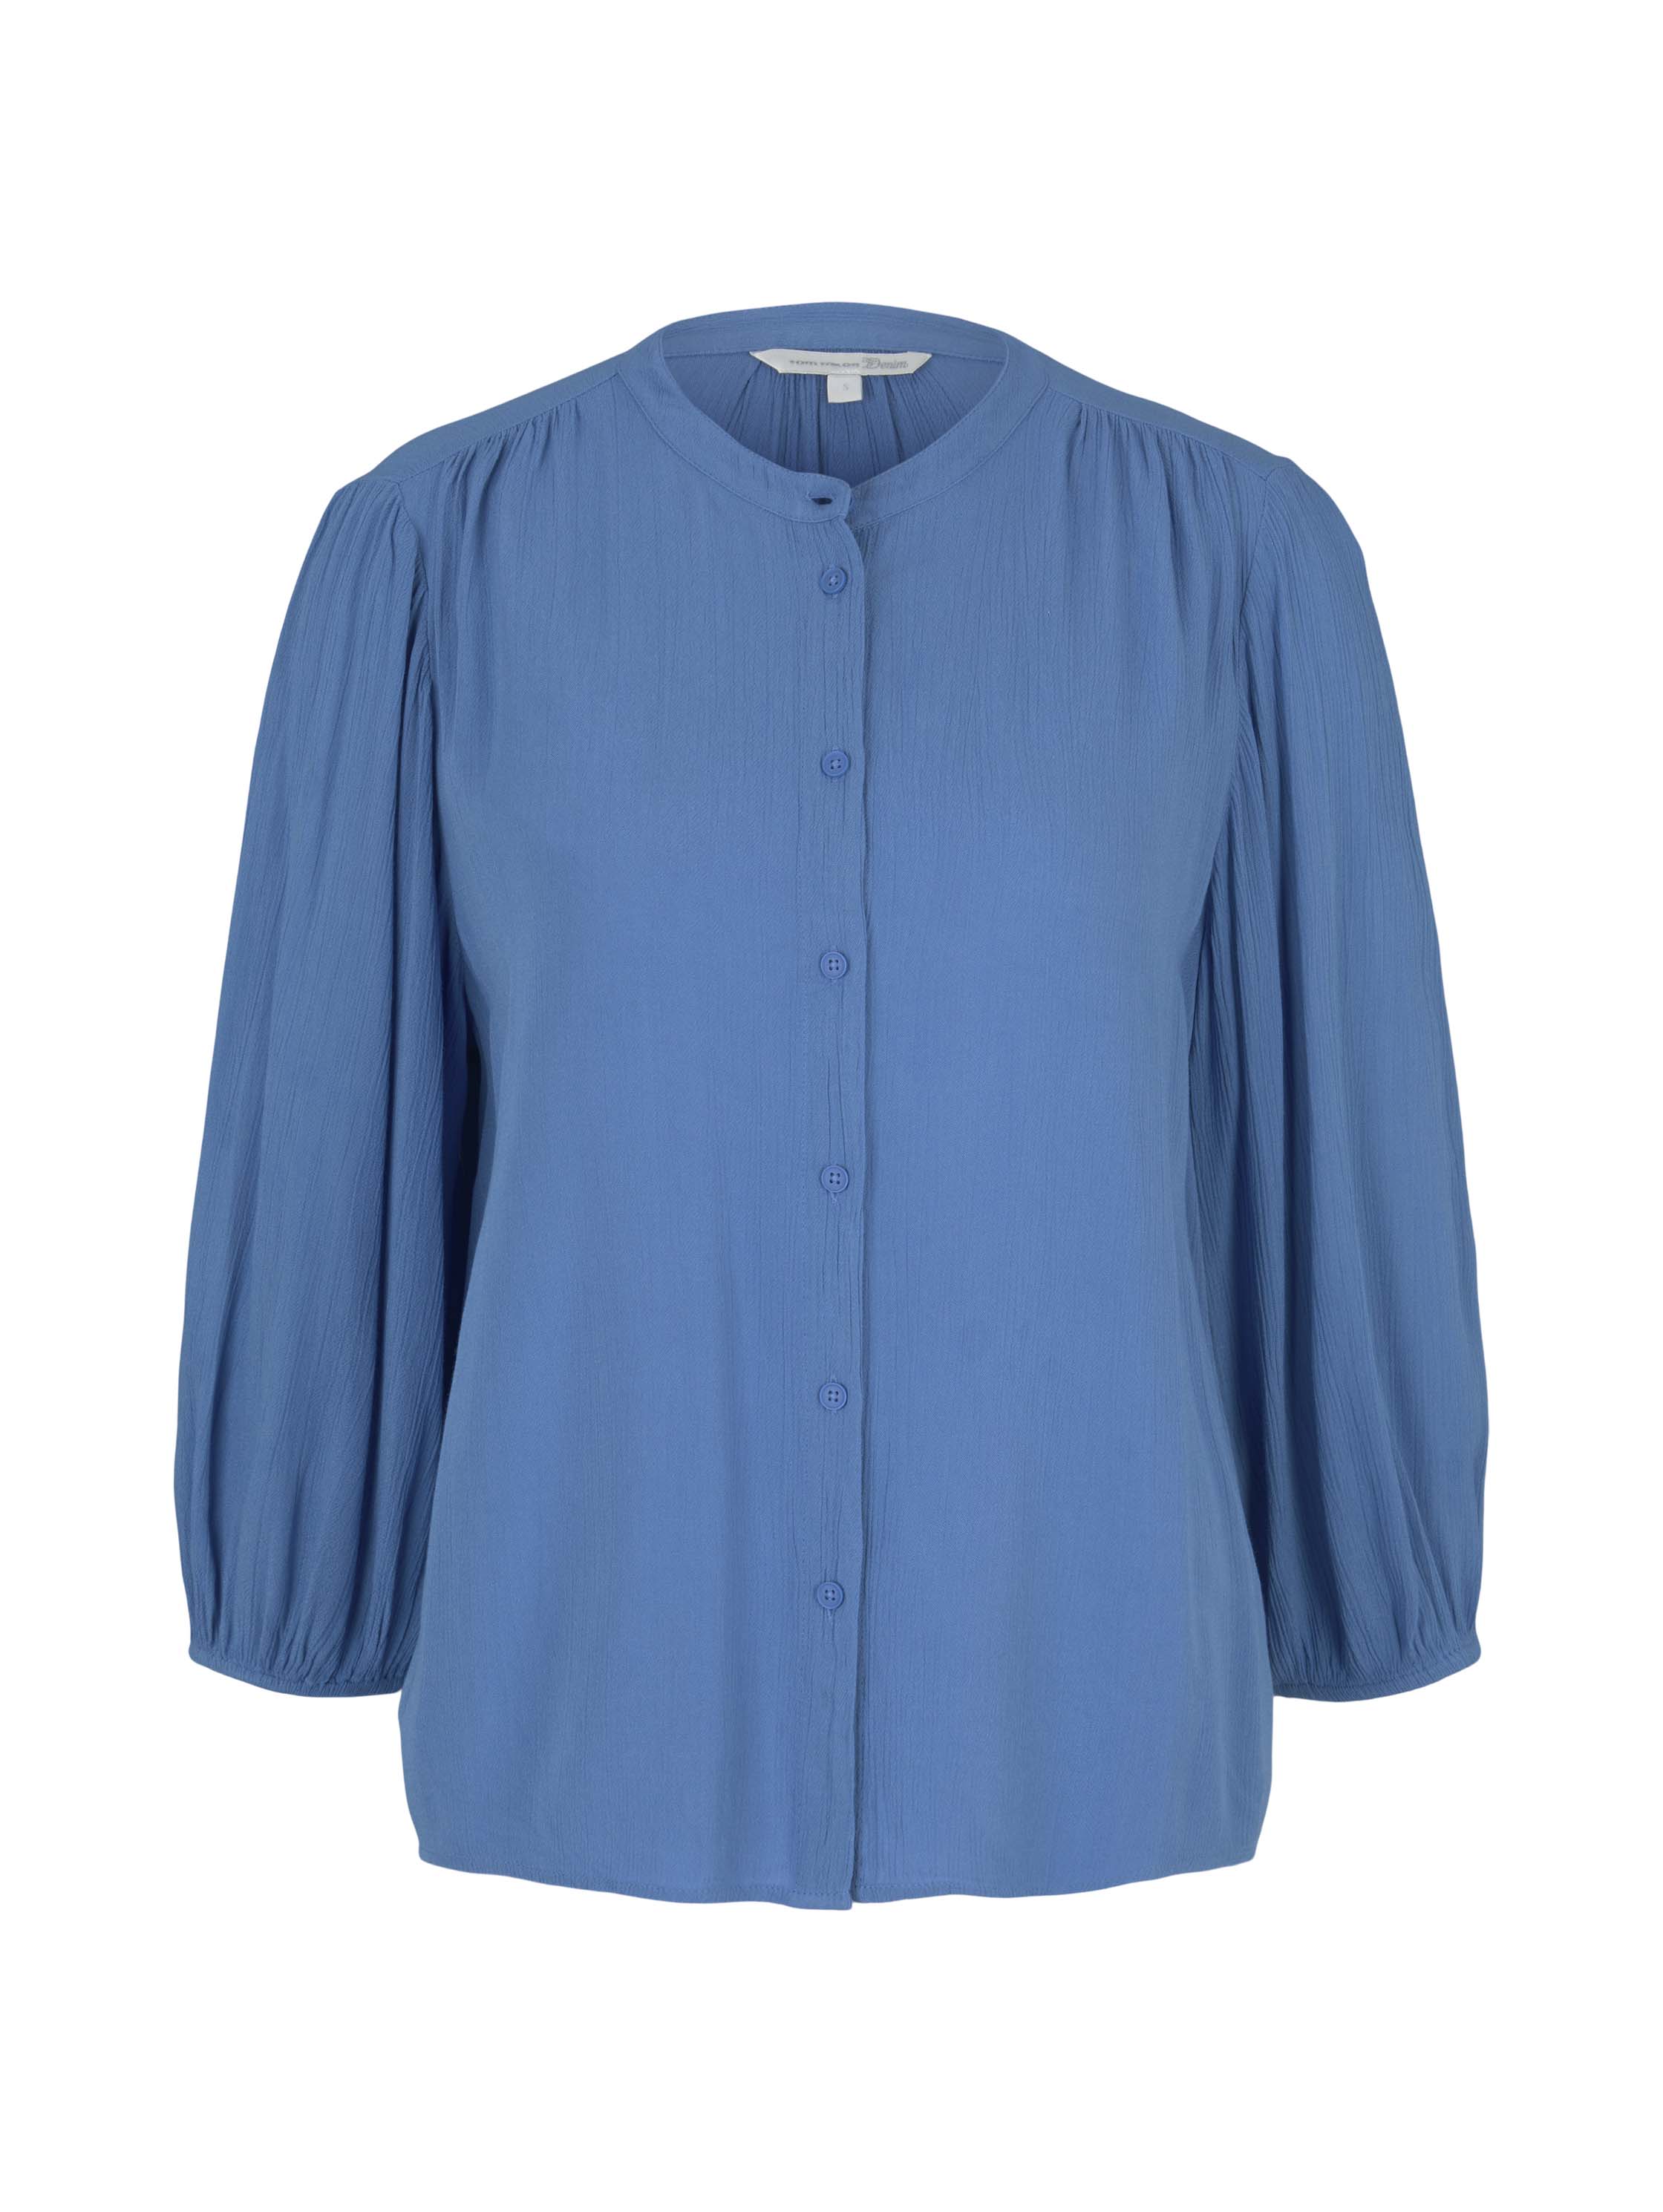 balloon sleeve blouse, mid blue